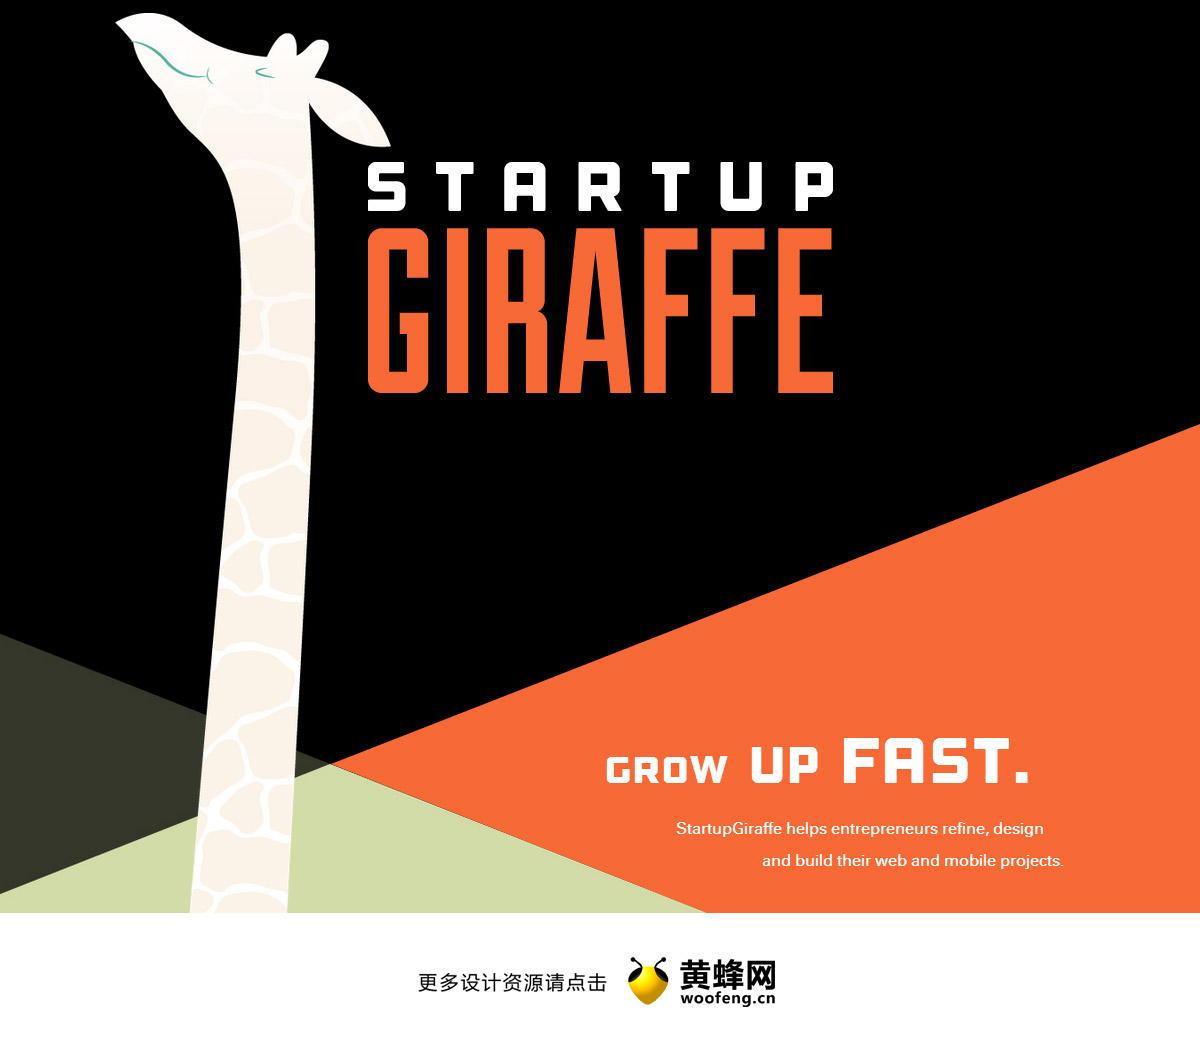 Startup Giraffe，来源自黄蜂网https://woofeng.cn/web/